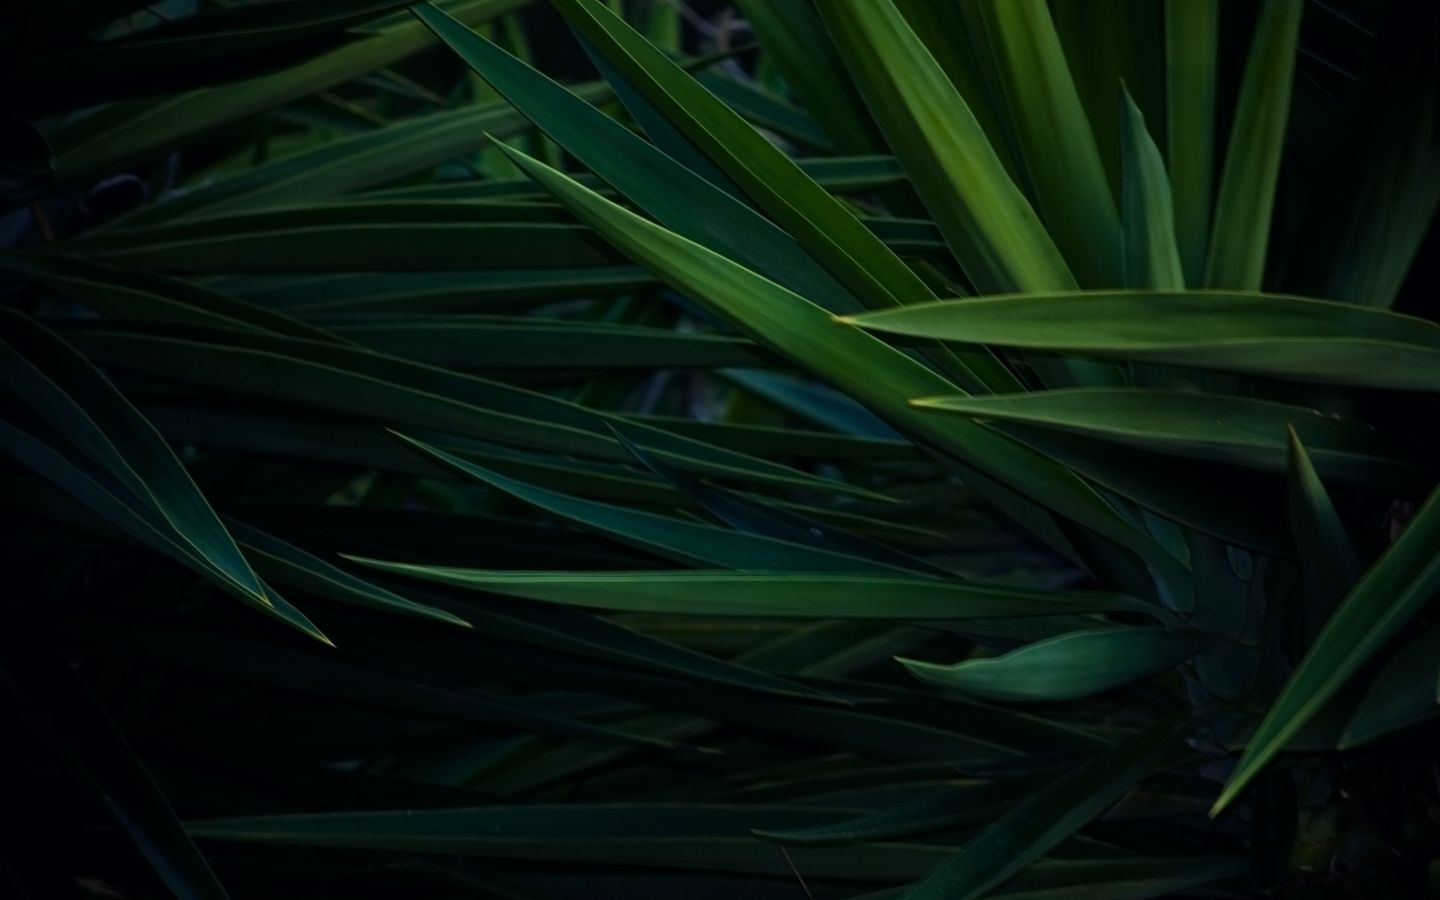 На фотографии черная коробка на зеленой траве слой расположенный ниже залит синим цветом